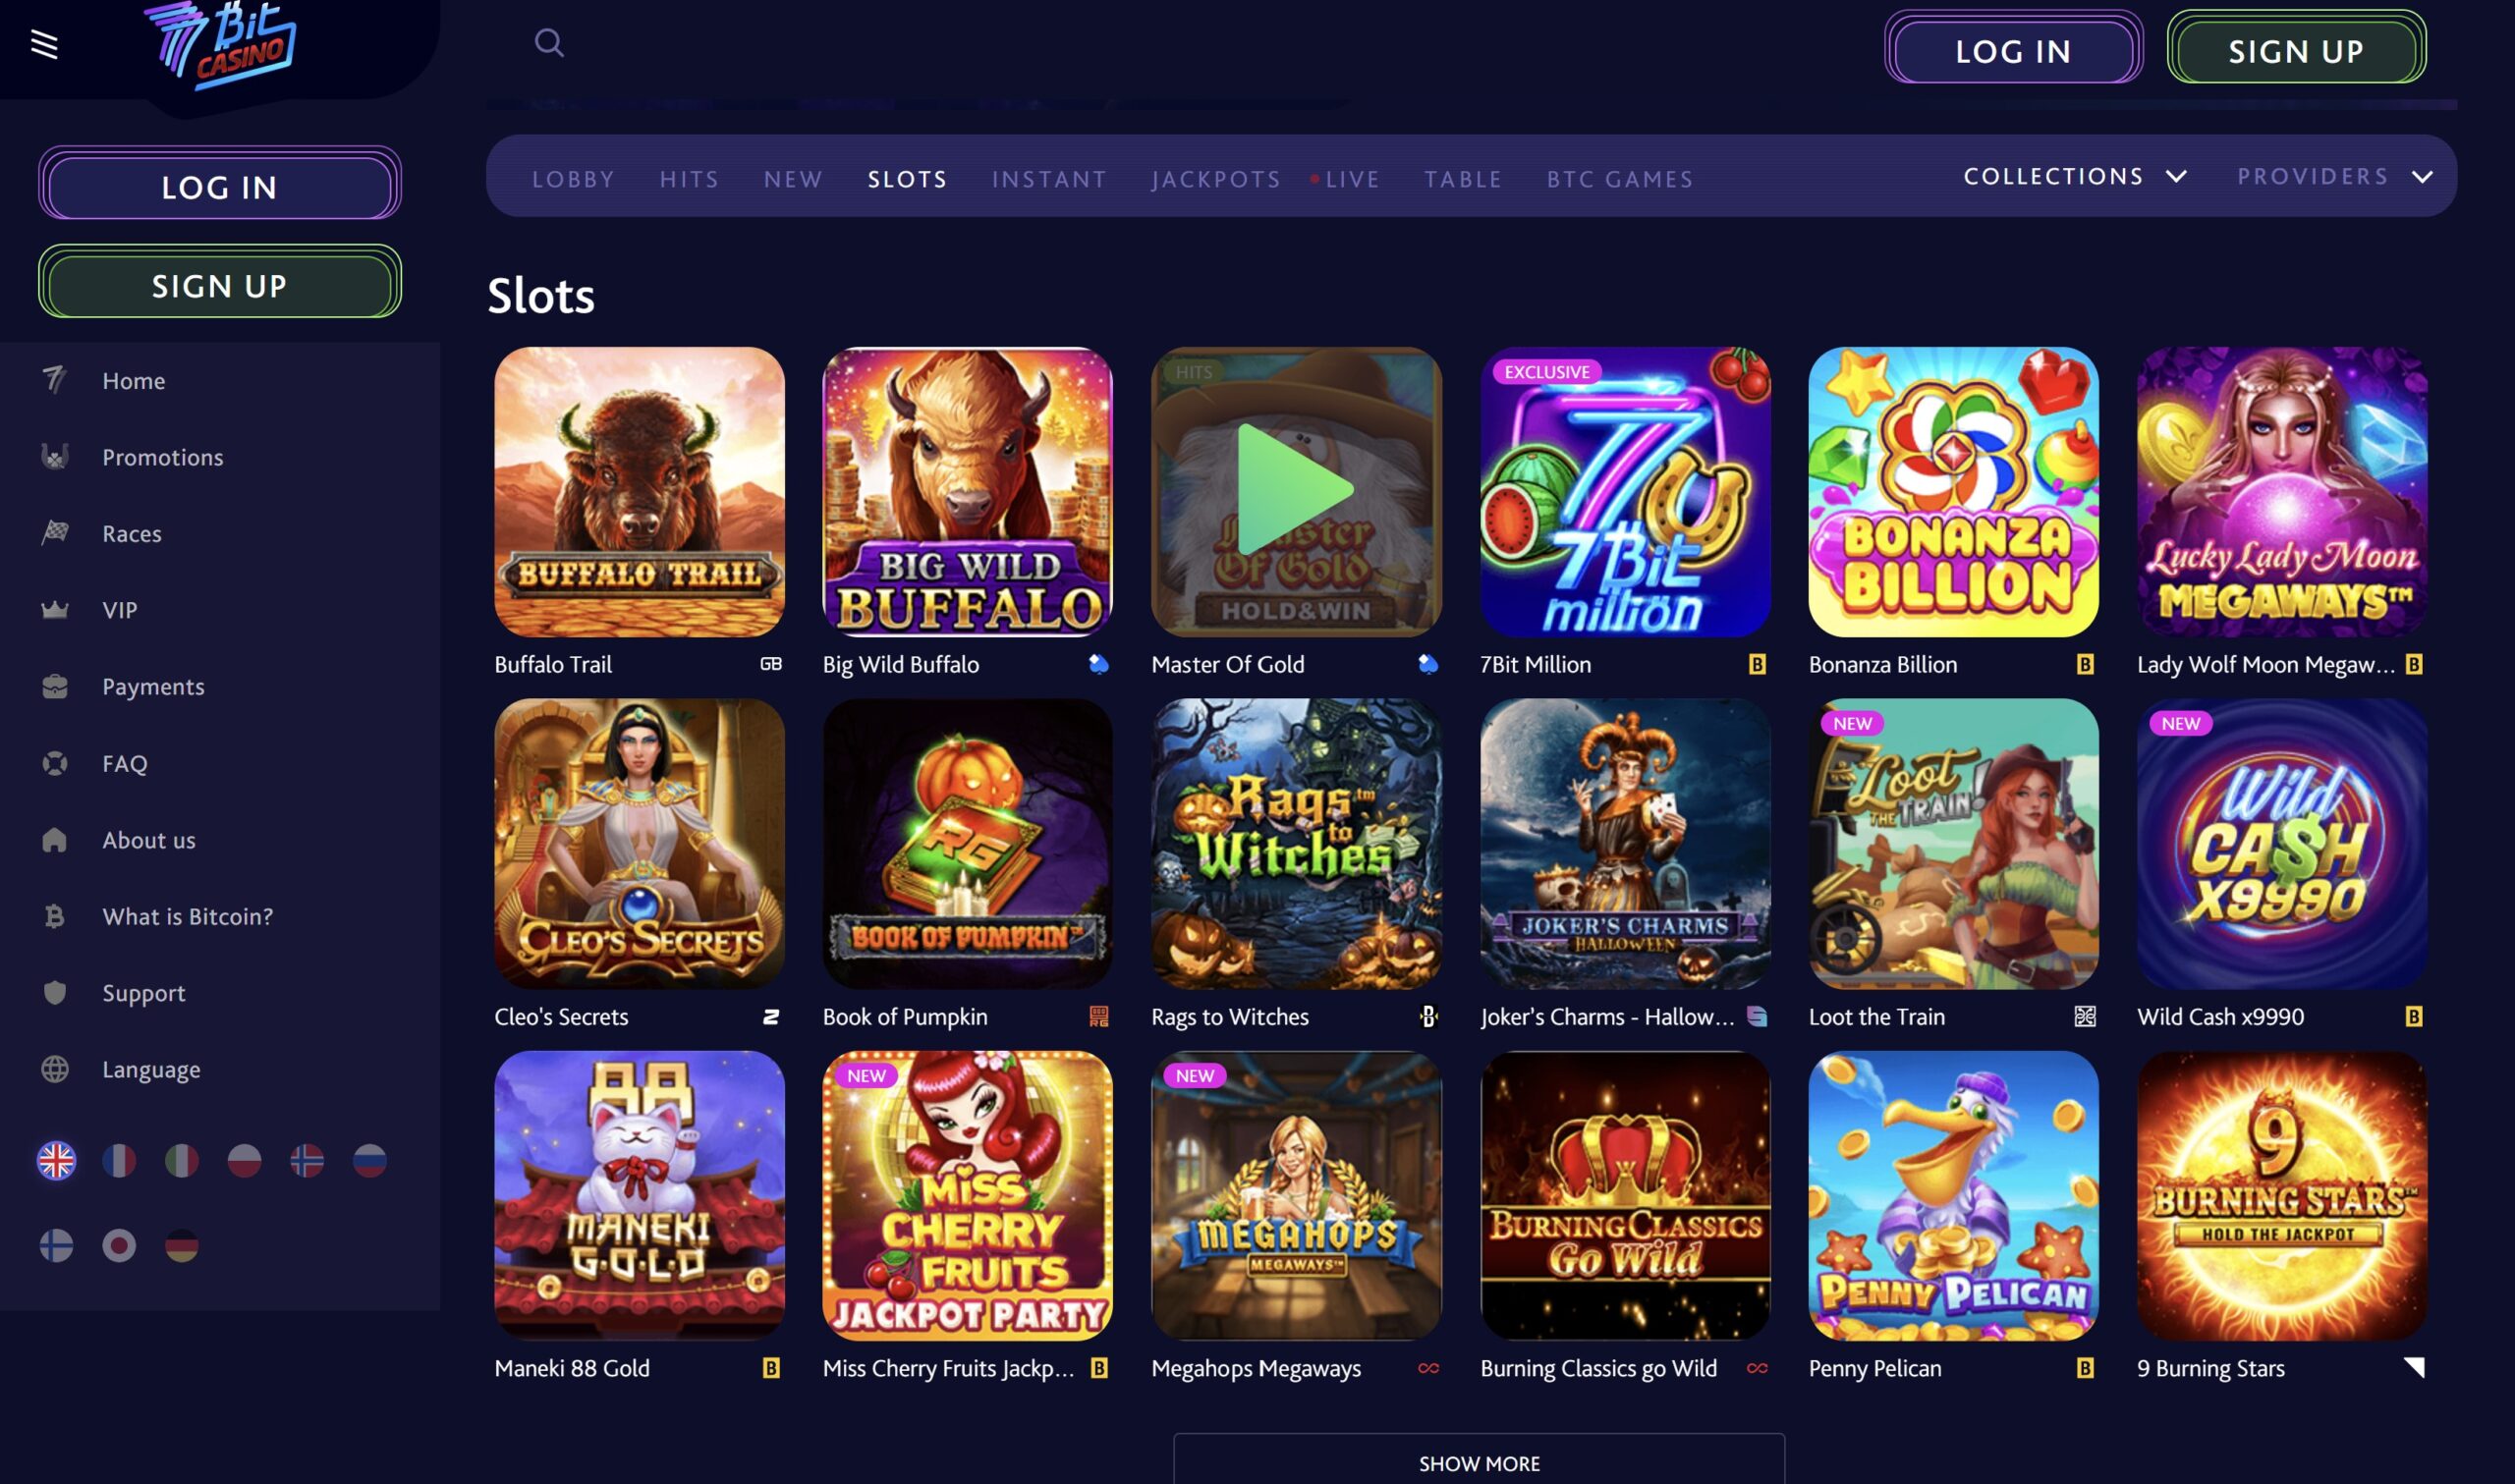 7bit casino app